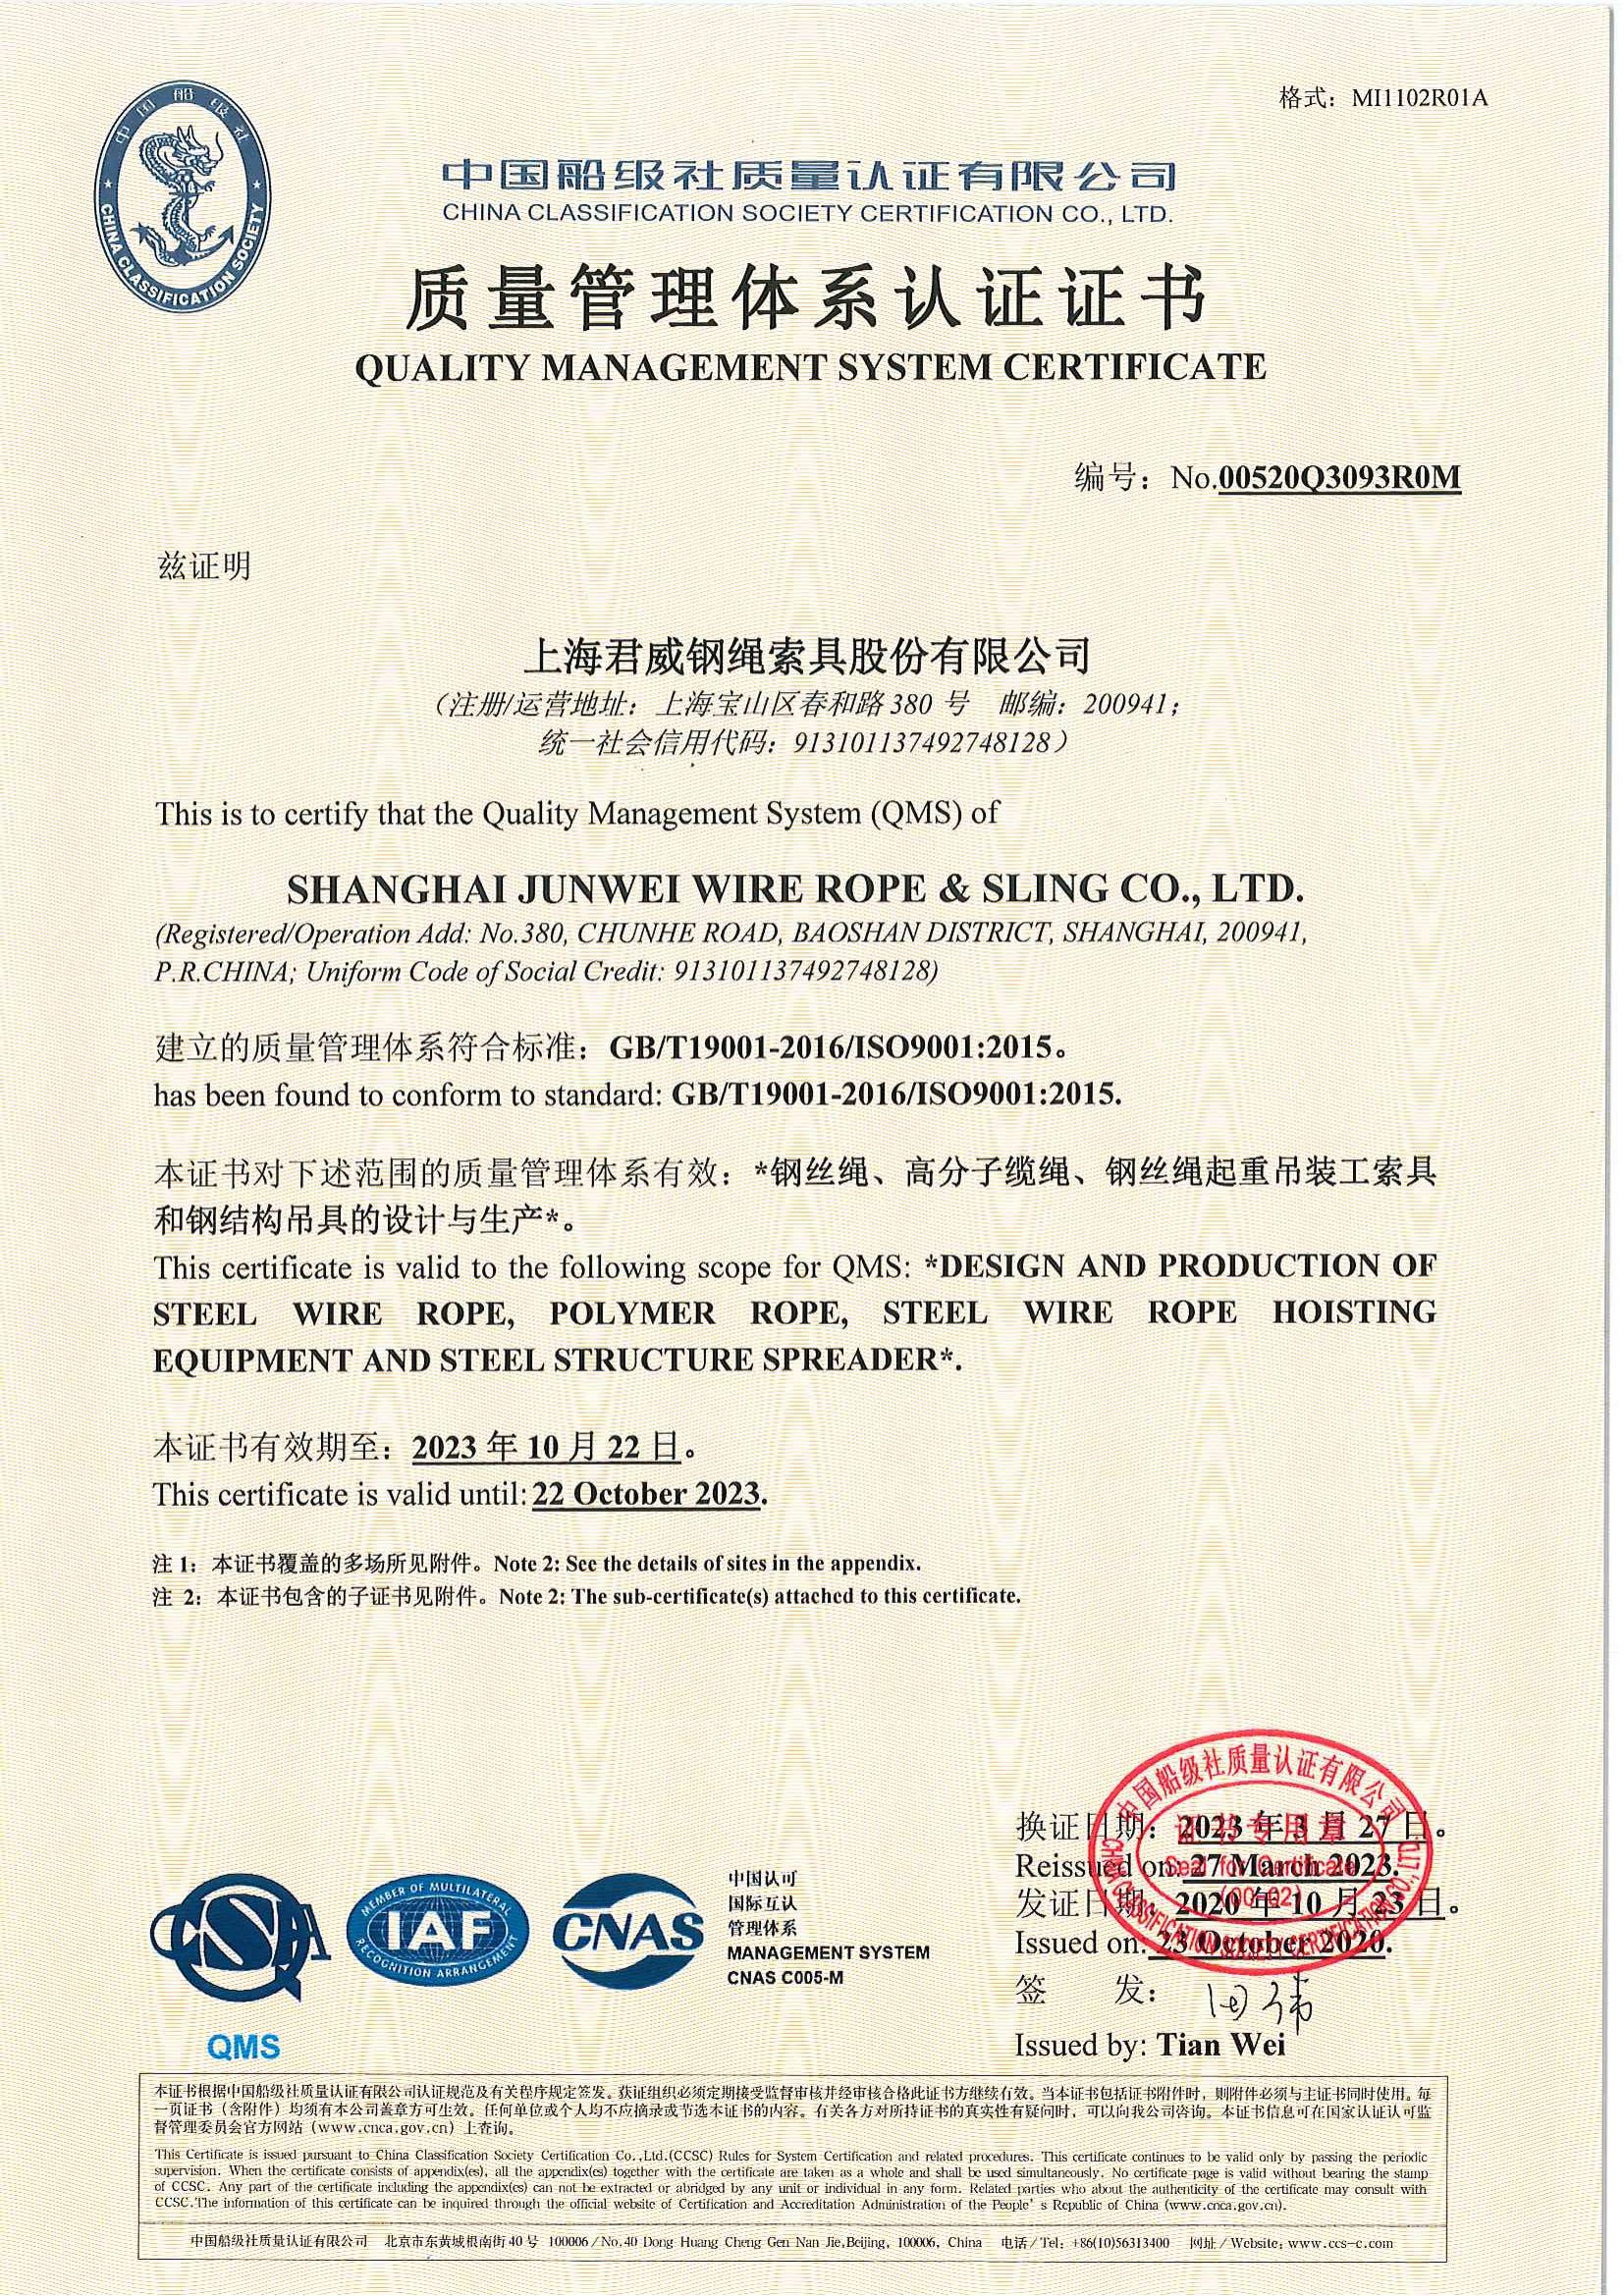 上海君威鋼繩索具股份有限公司 質量管理體系認證證書